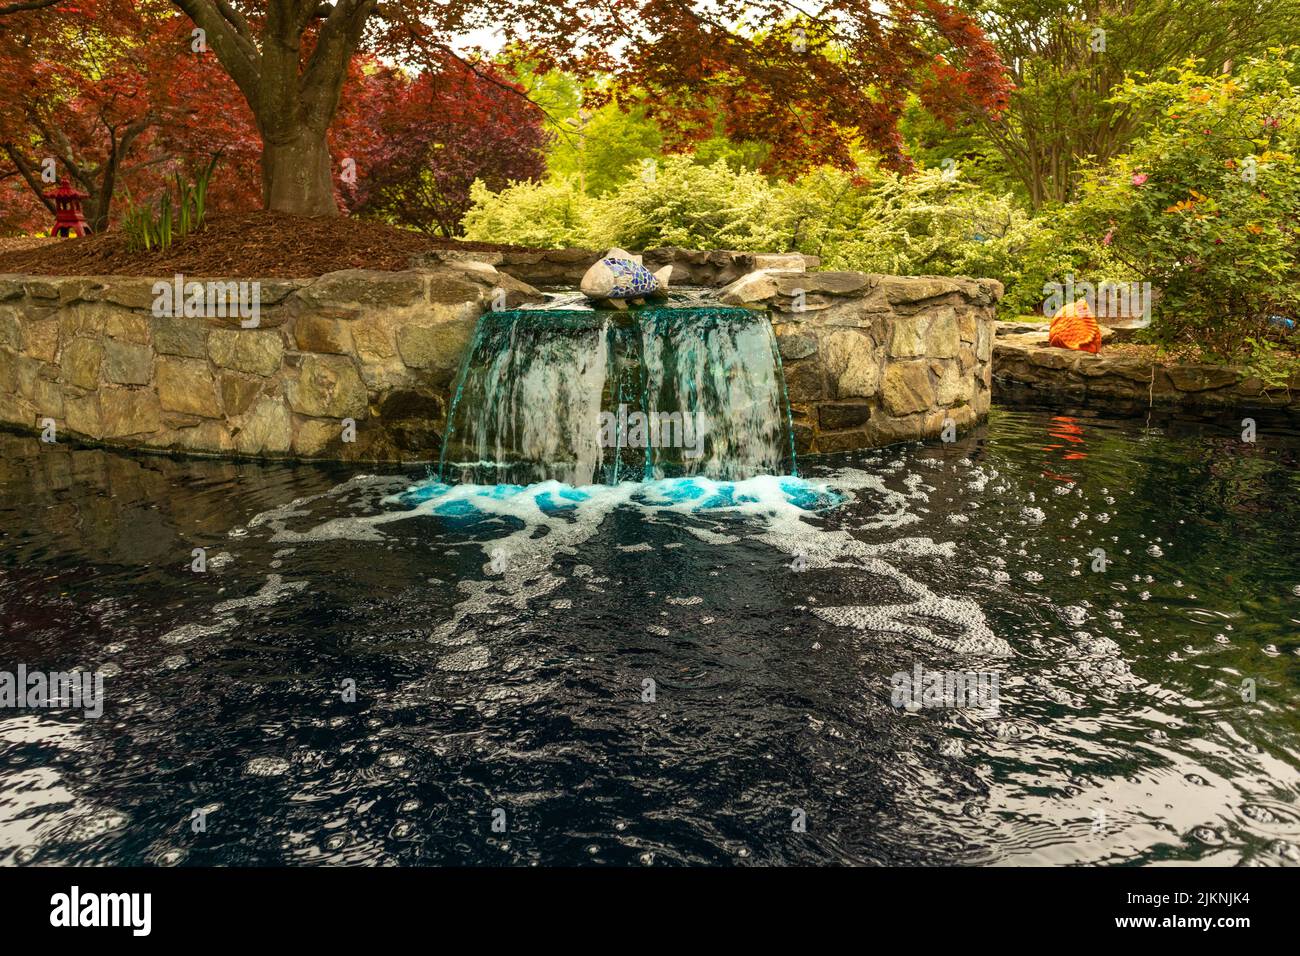 Une belle photo d'une eau tombant d'un mur rocheux et faisant de la rivière avec des arbres en arrière-plan Banque D'Images